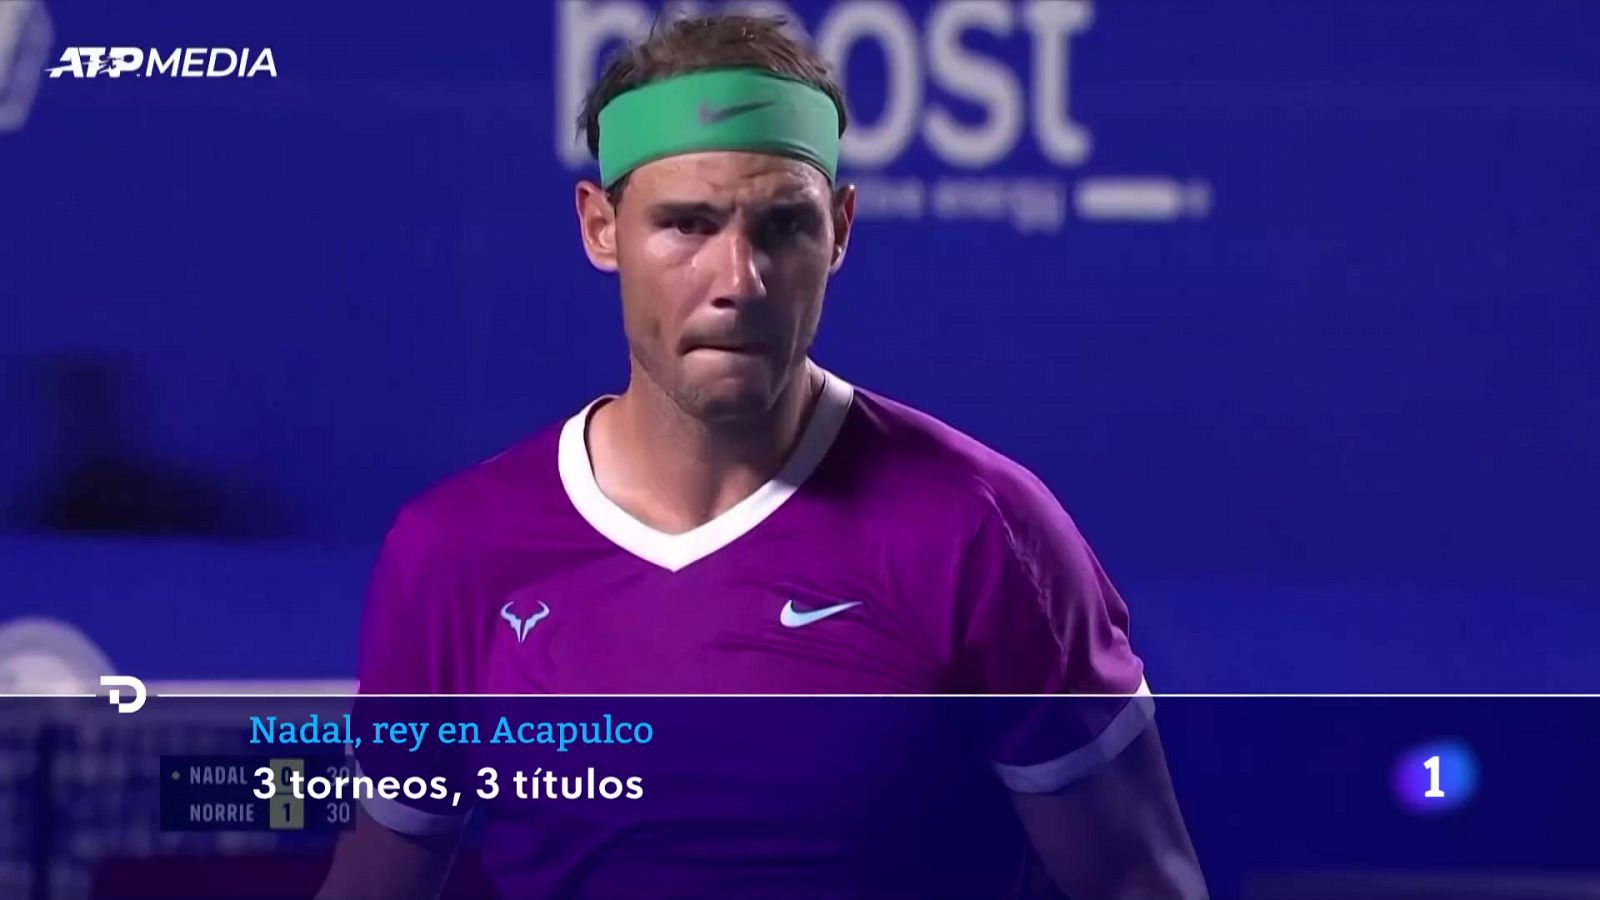 Nadal alarga su racha en Acapulco y suma su 91º título -- Ver ahora